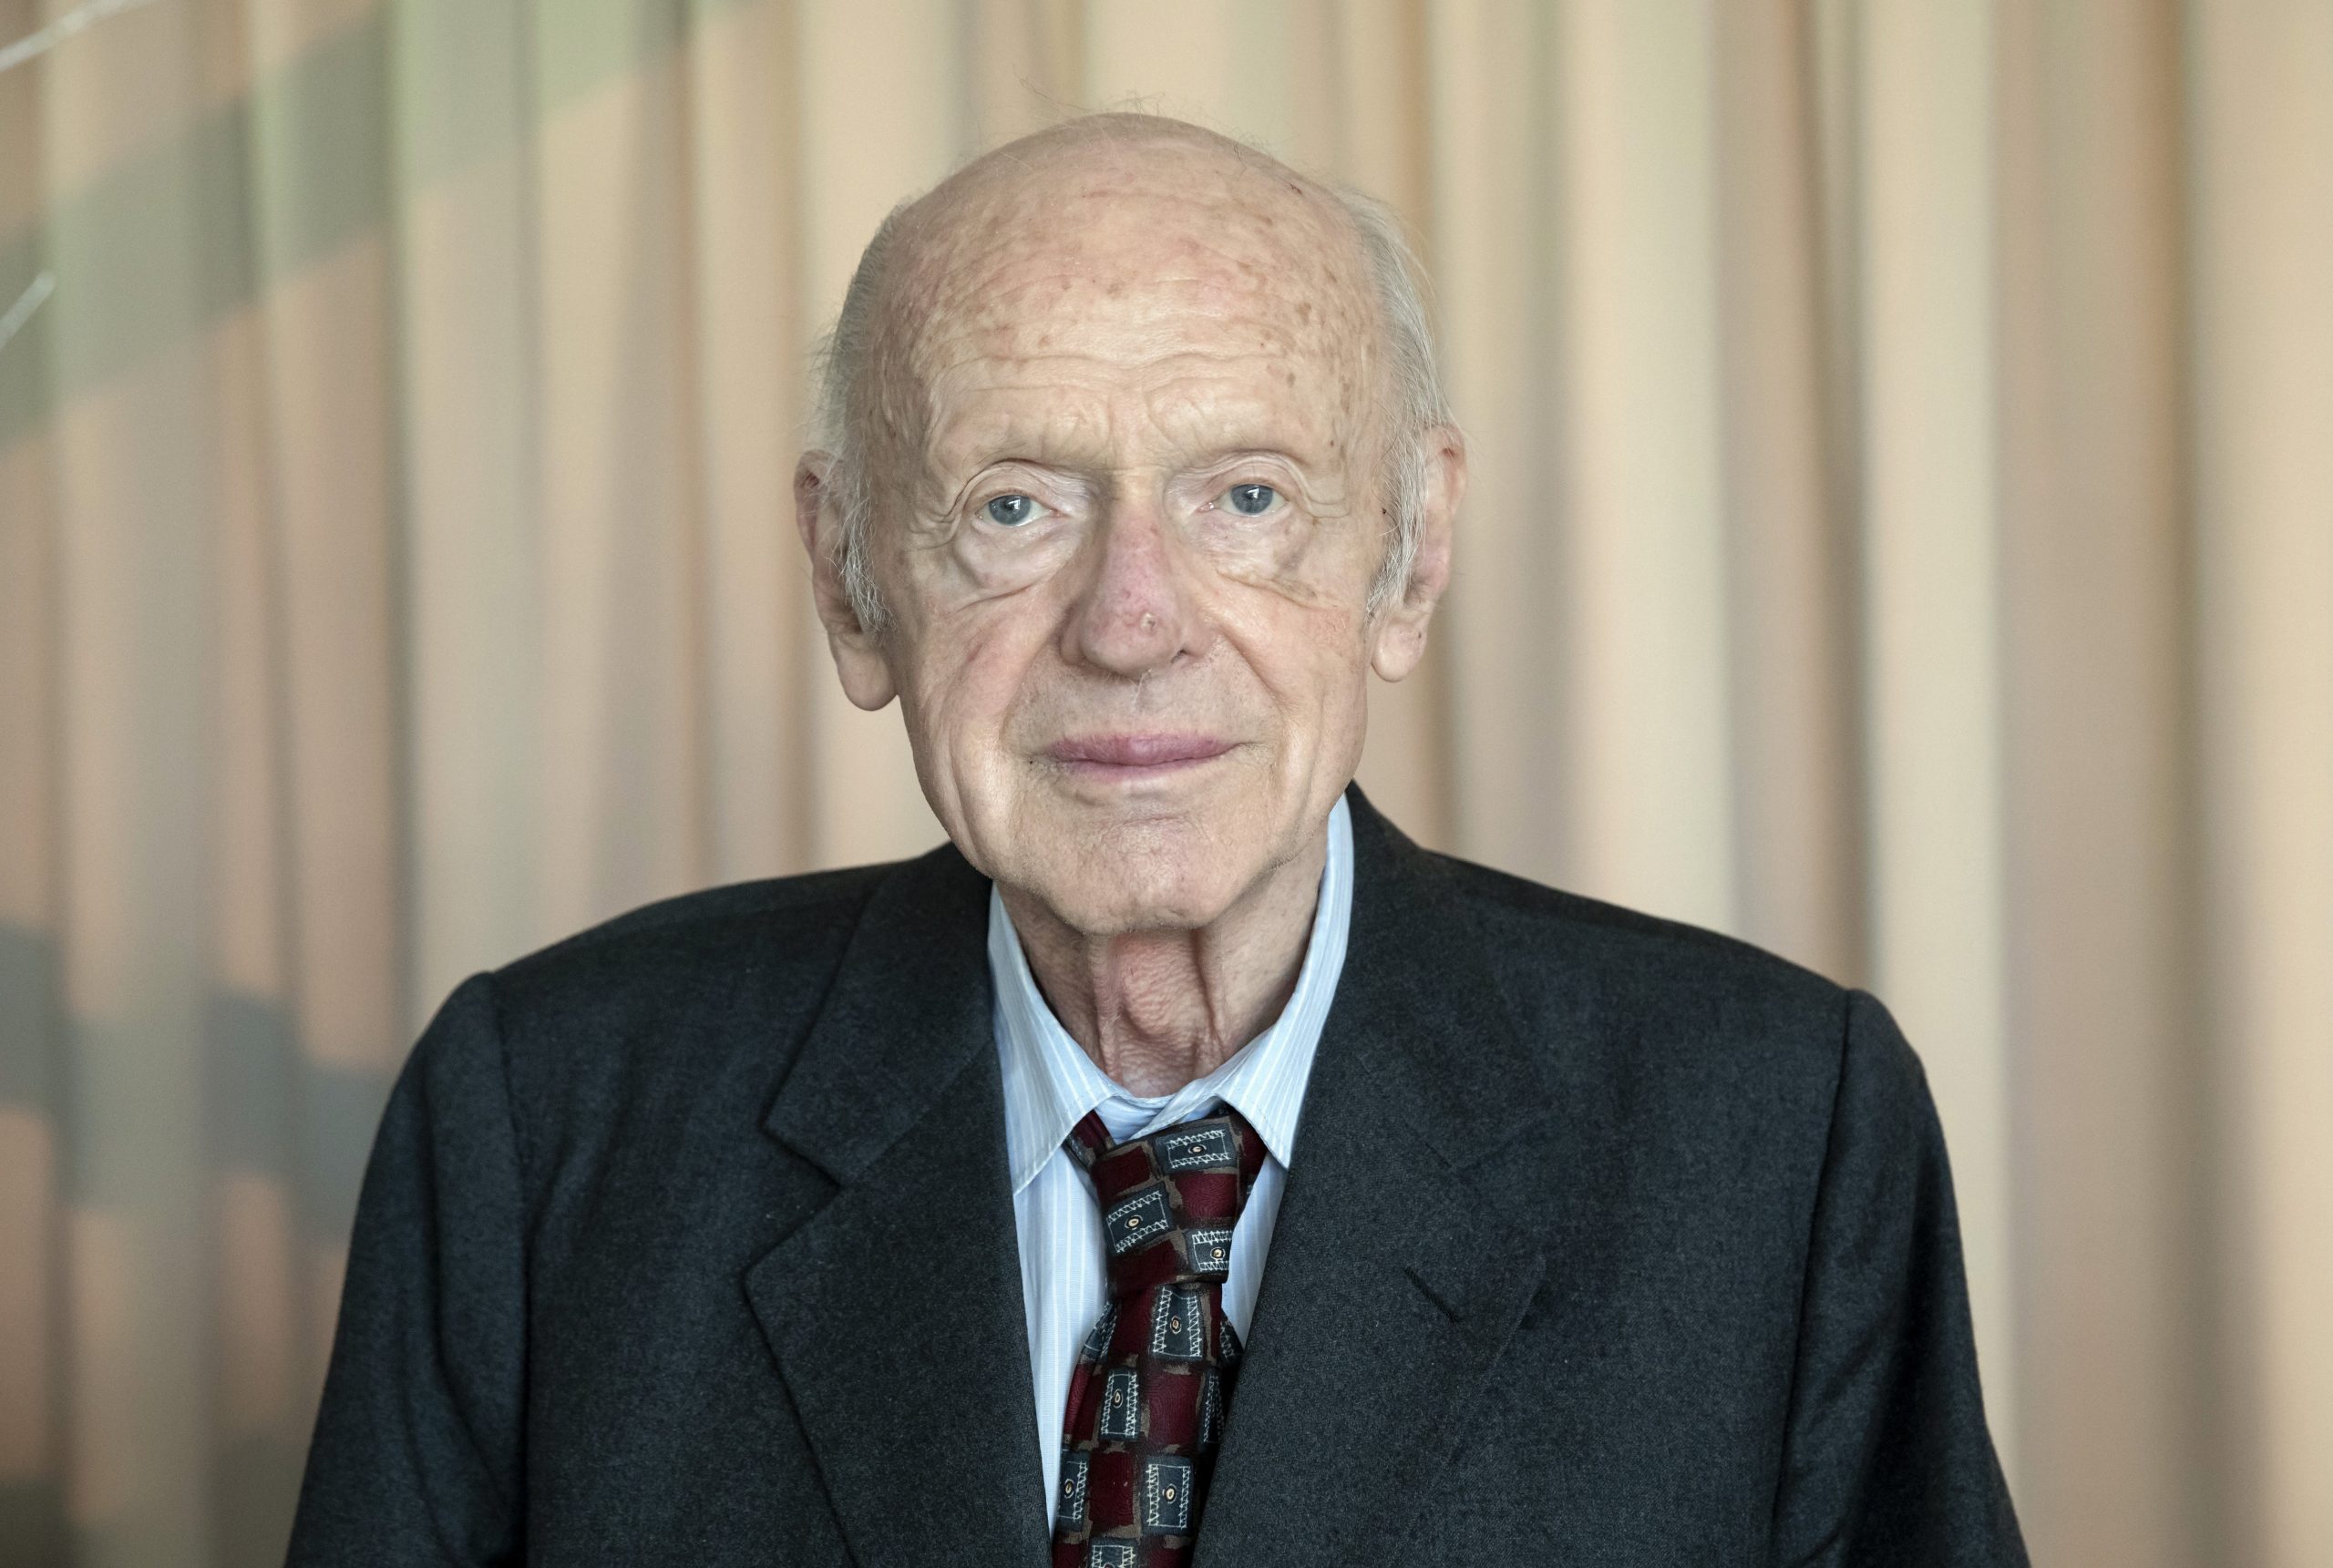 86 éves korában elhunyt Joseph Halls, a Rákosi Egyesület tiszteletbeli elnöke.